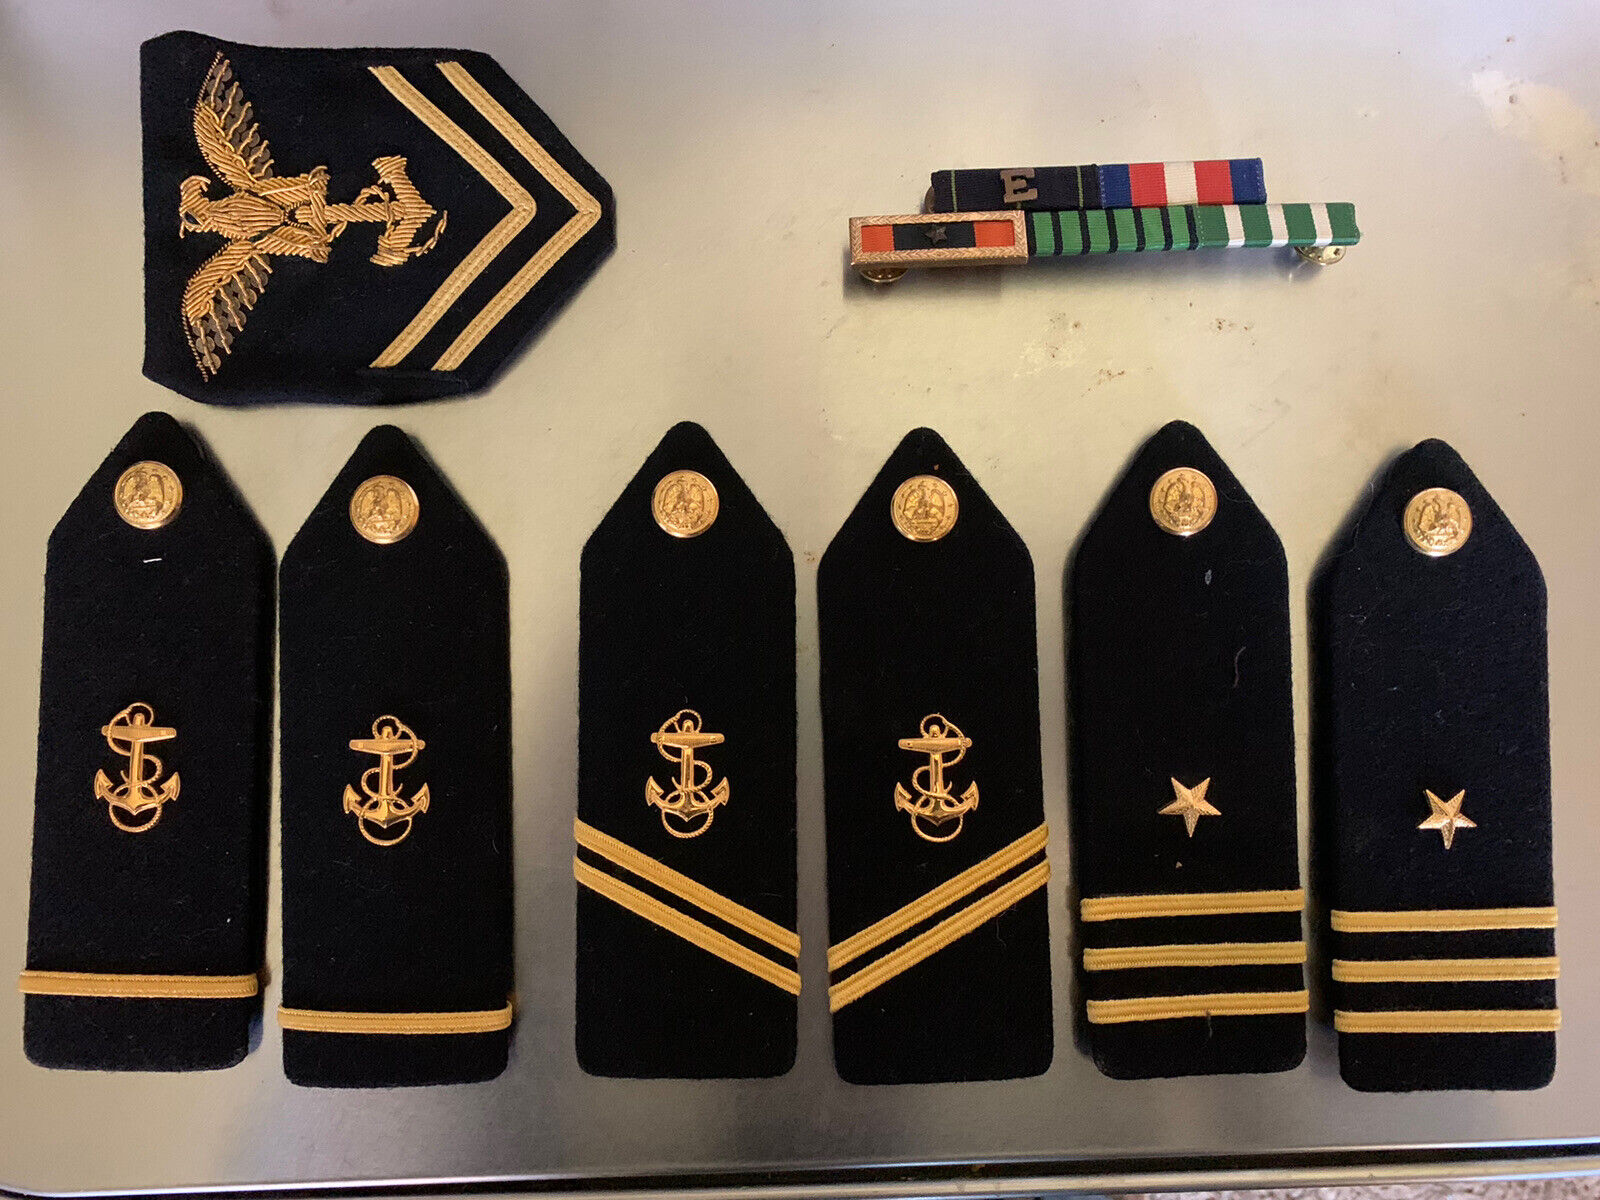 USNR midshipman ribbons and shoulder boards